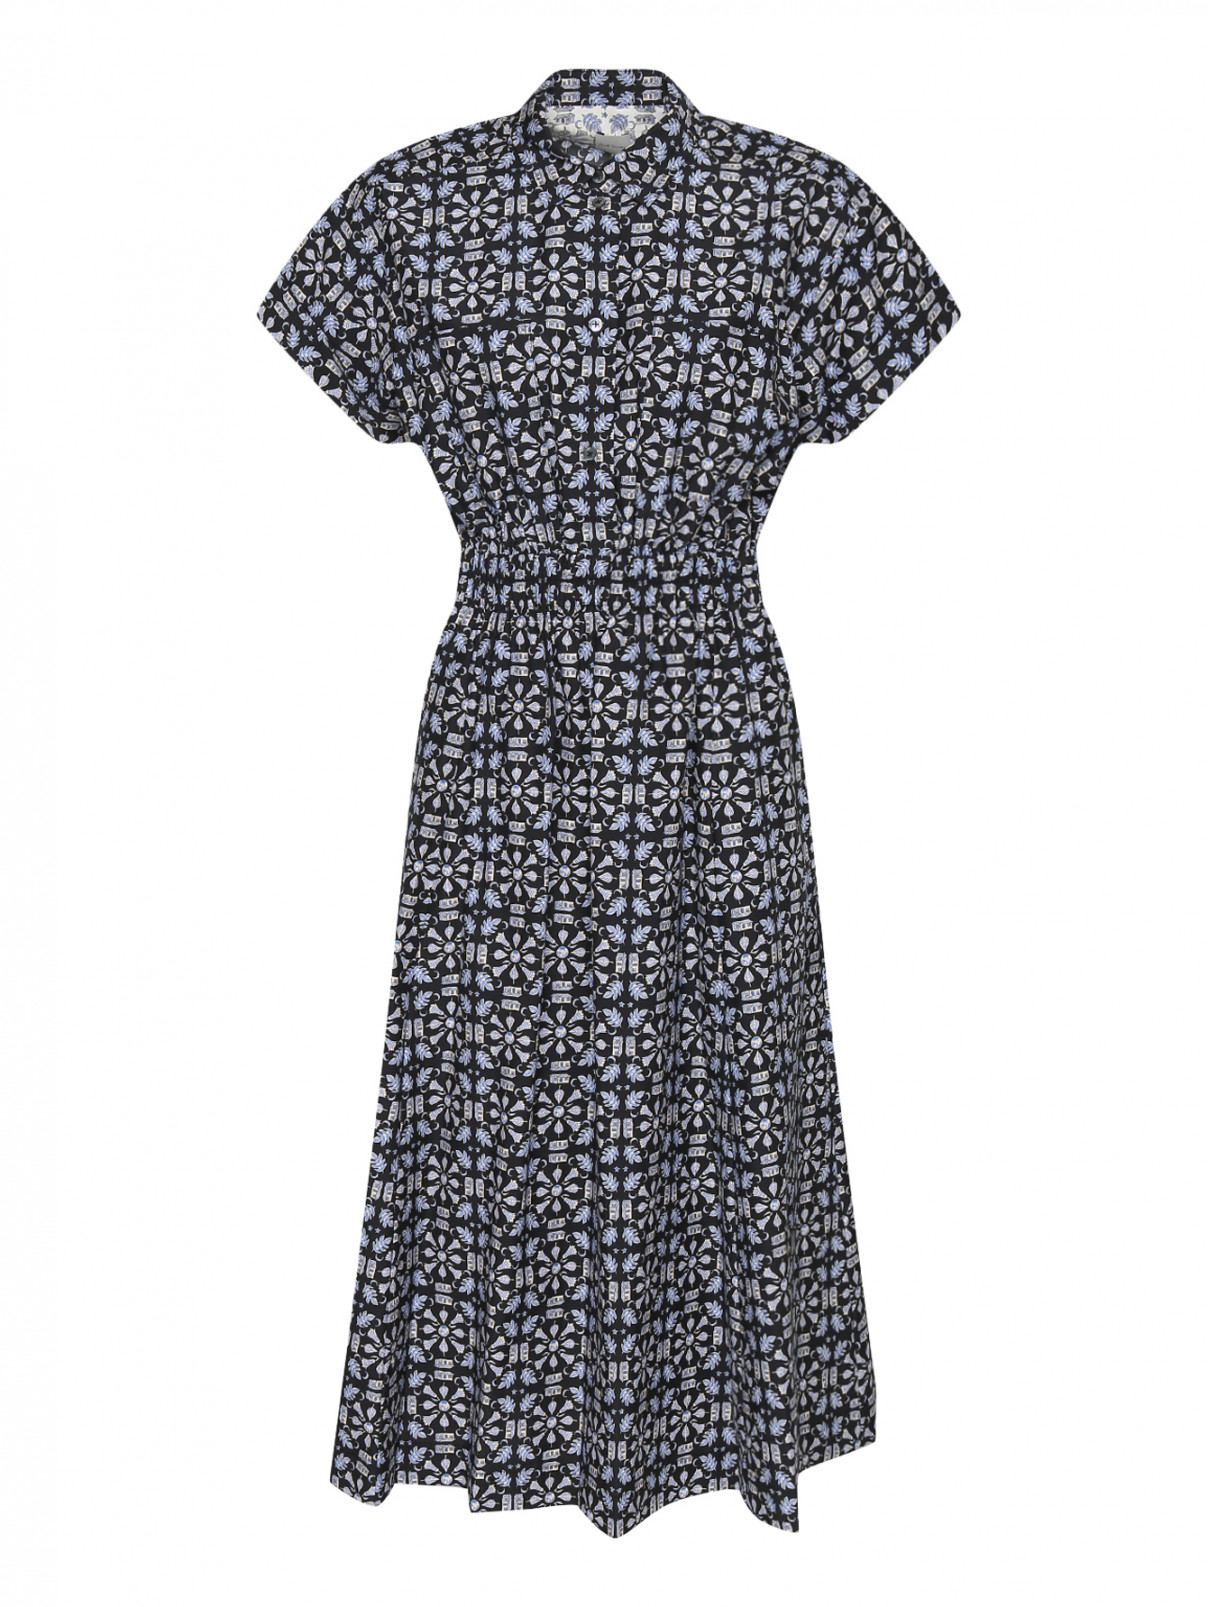 Хлопковое платье рубашка с цветочным принтом Paul Smith  –  Общий вид  – Цвет:  Синий